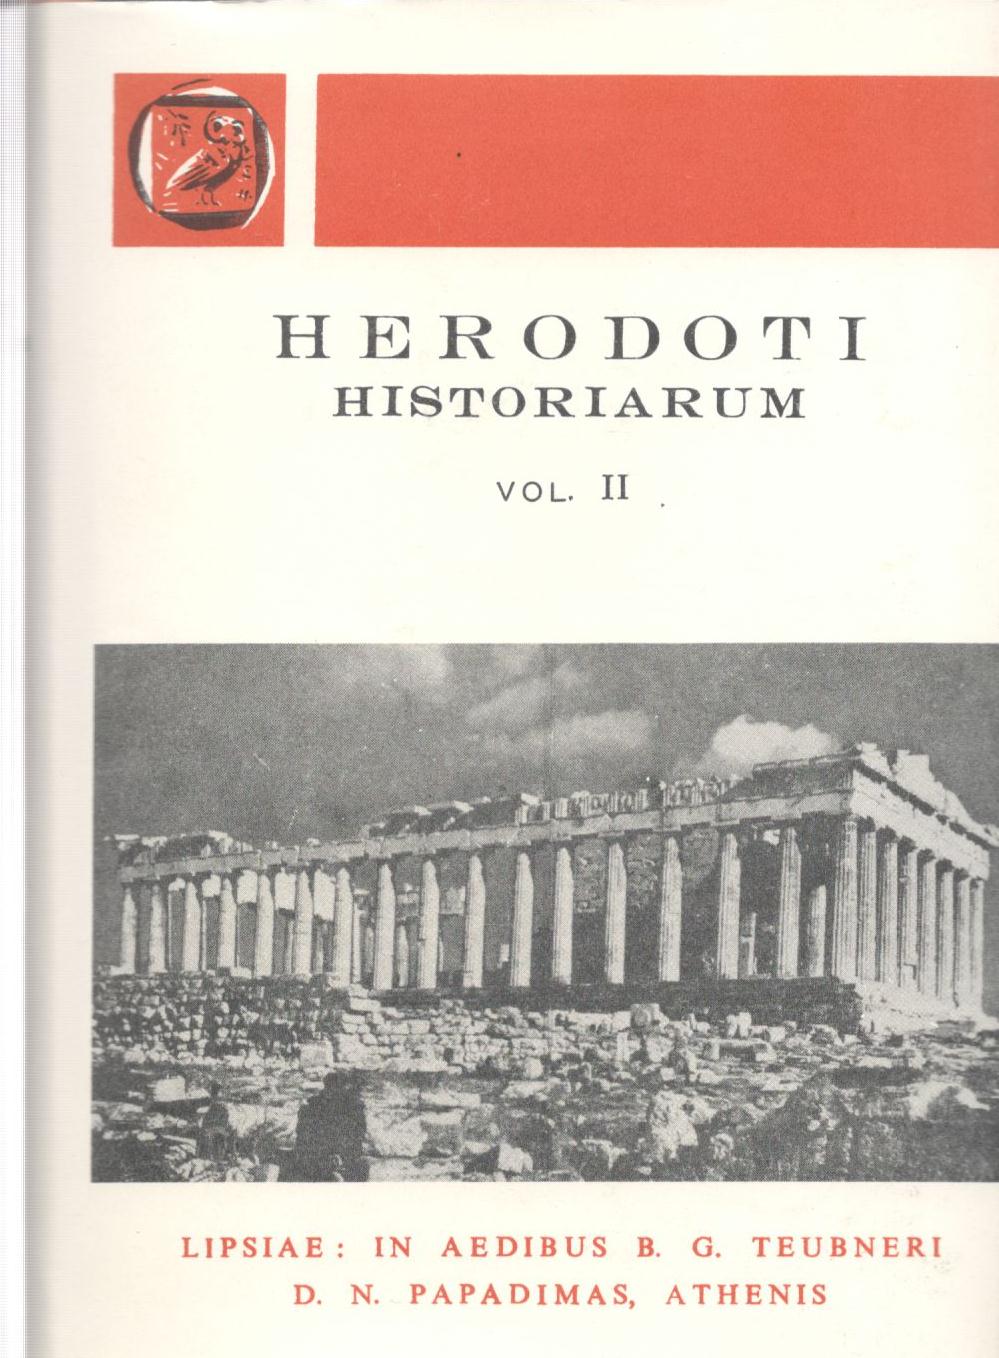 Herodoti historiarum, Vol. II [Ηροδότου, Ιστορίαι, τ. Β', βιβλία 5-9]